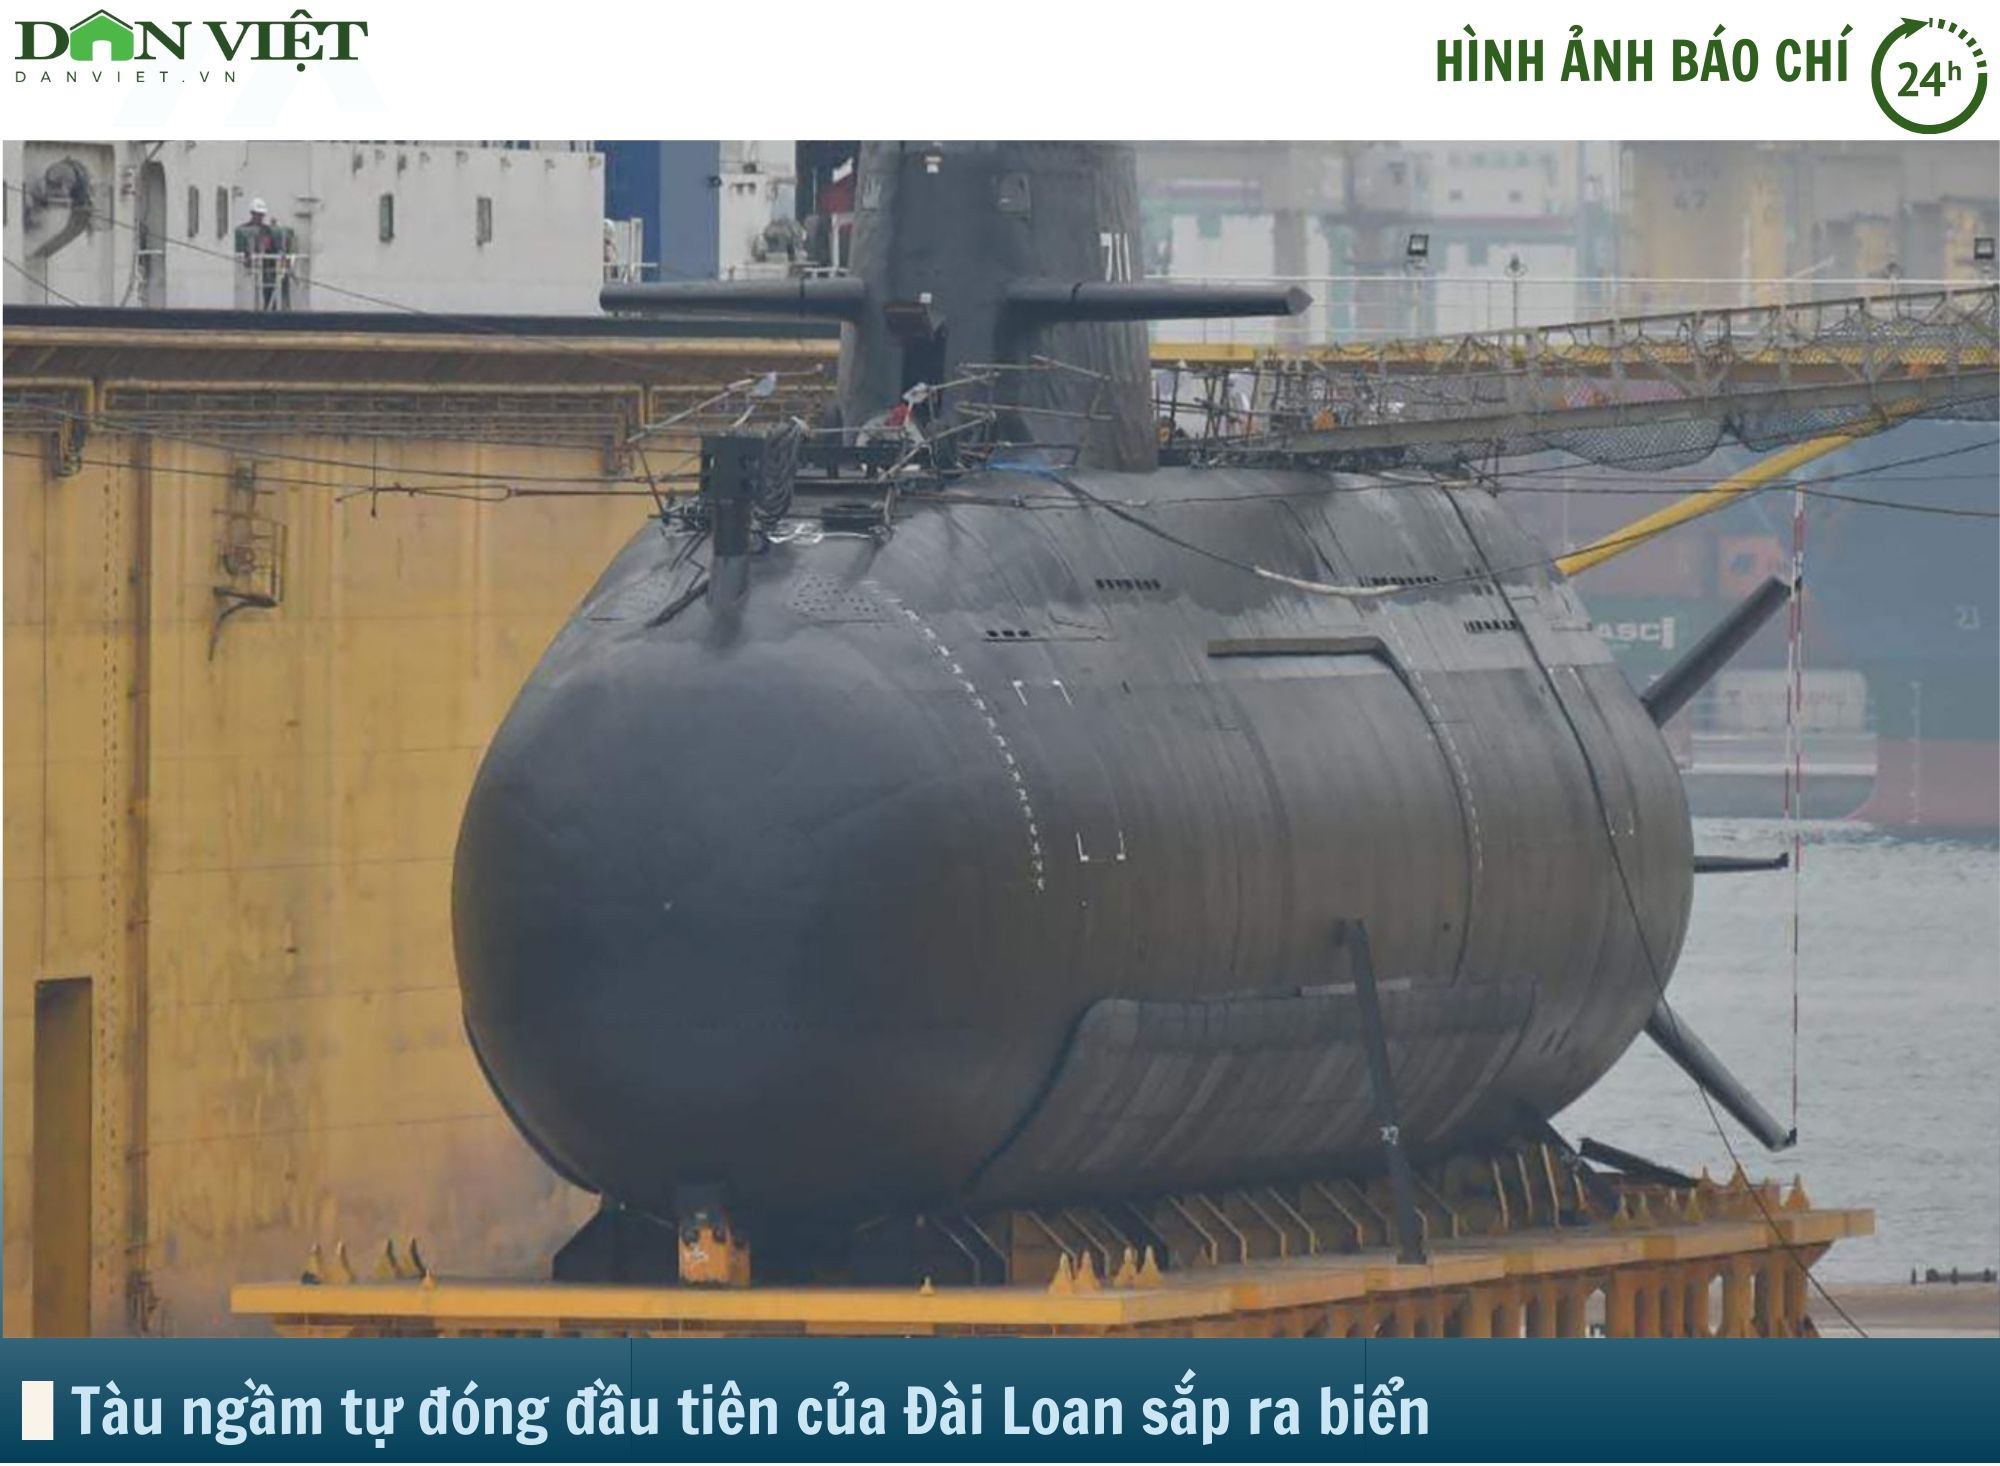 Hình ảnh báo chí 24h: Chiêm ngưỡng tàu ngầm tự đóng của Đài Loan sắp ra biển- Ảnh 1.